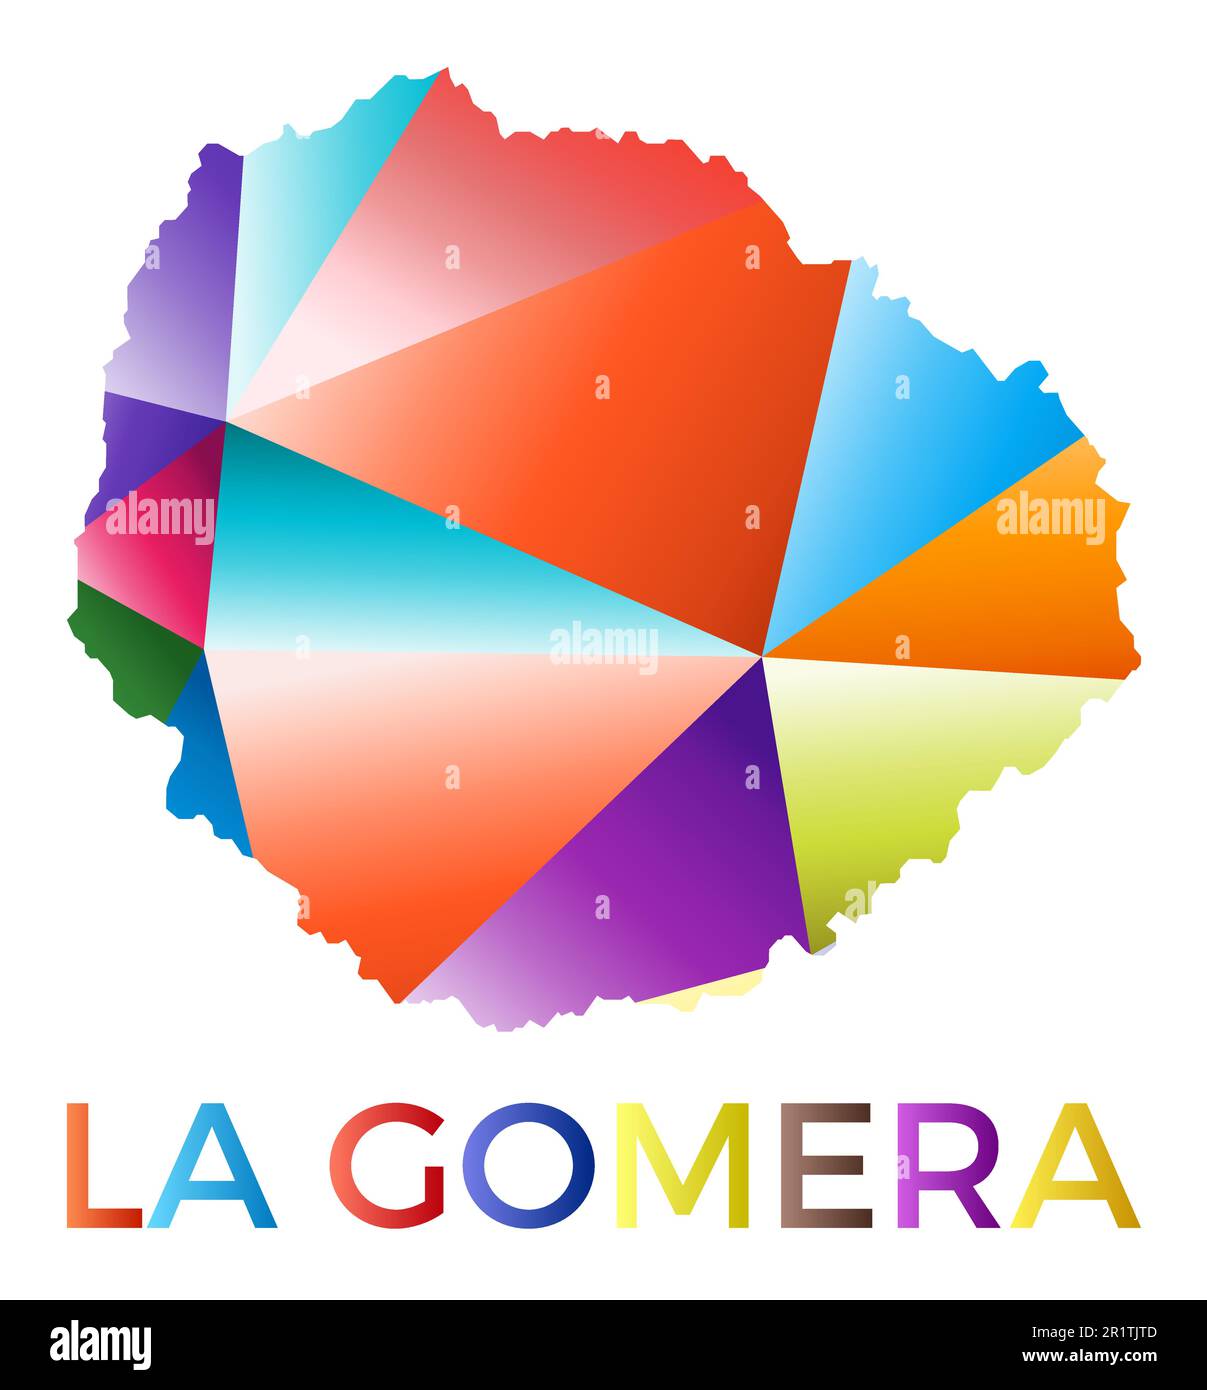 Leuchtende La Gomera-Form. Mehrfarbiges, geometrisches Insellogo. Modernes, trendiges Design. Leistungsstarke Vektordarstellung. Stock Vektor